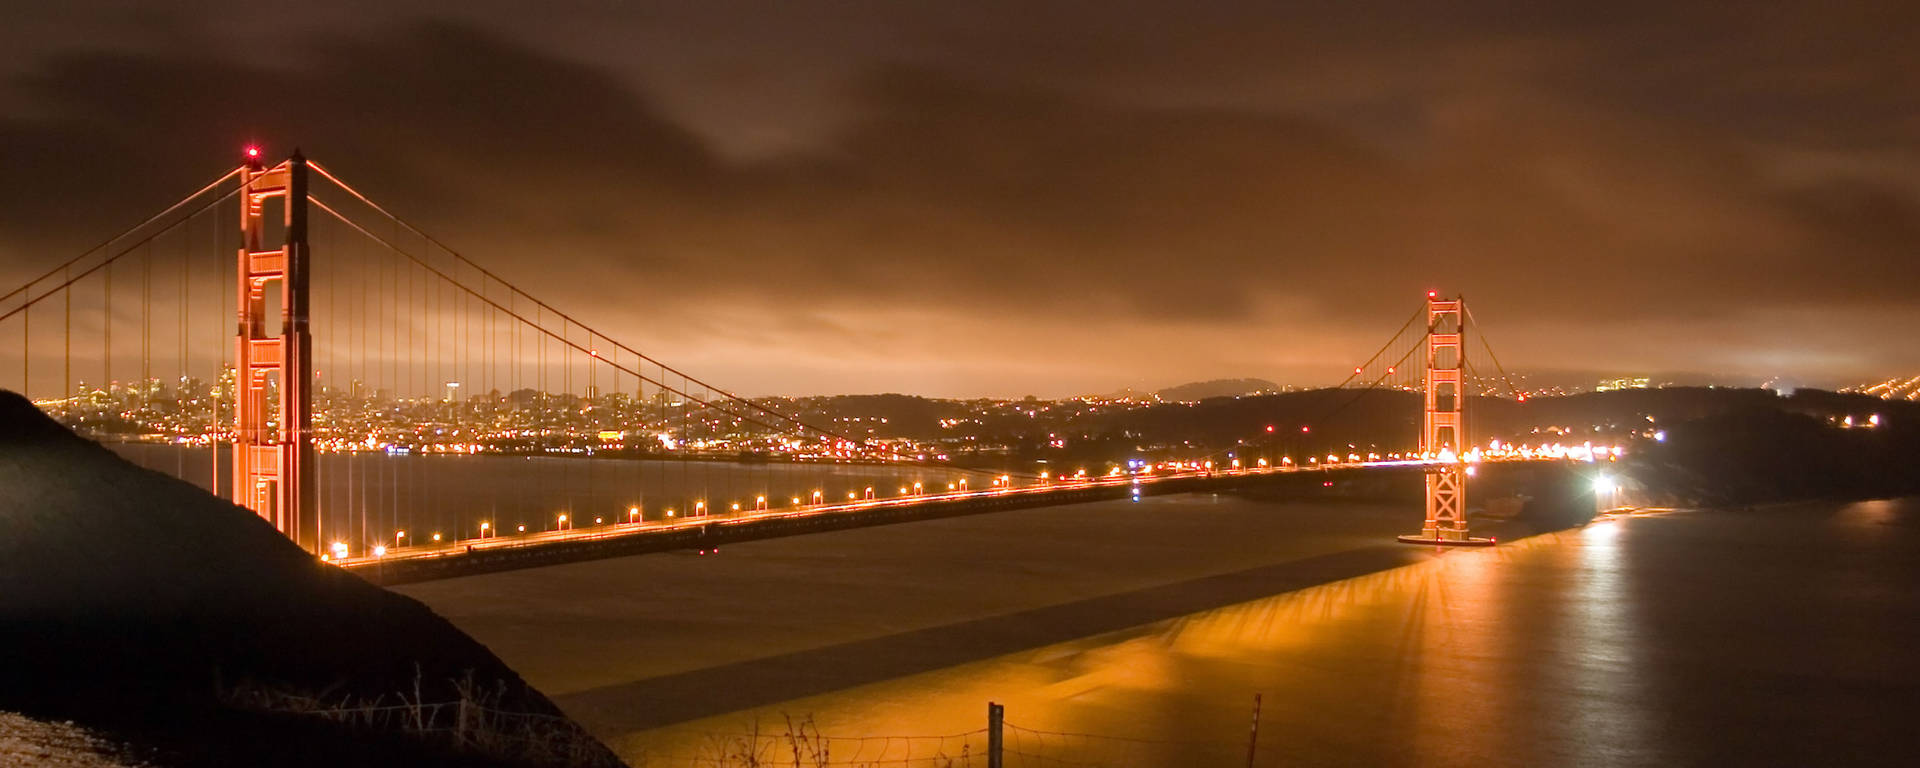 Golden Gate Bridge Over Golden Hours Picture